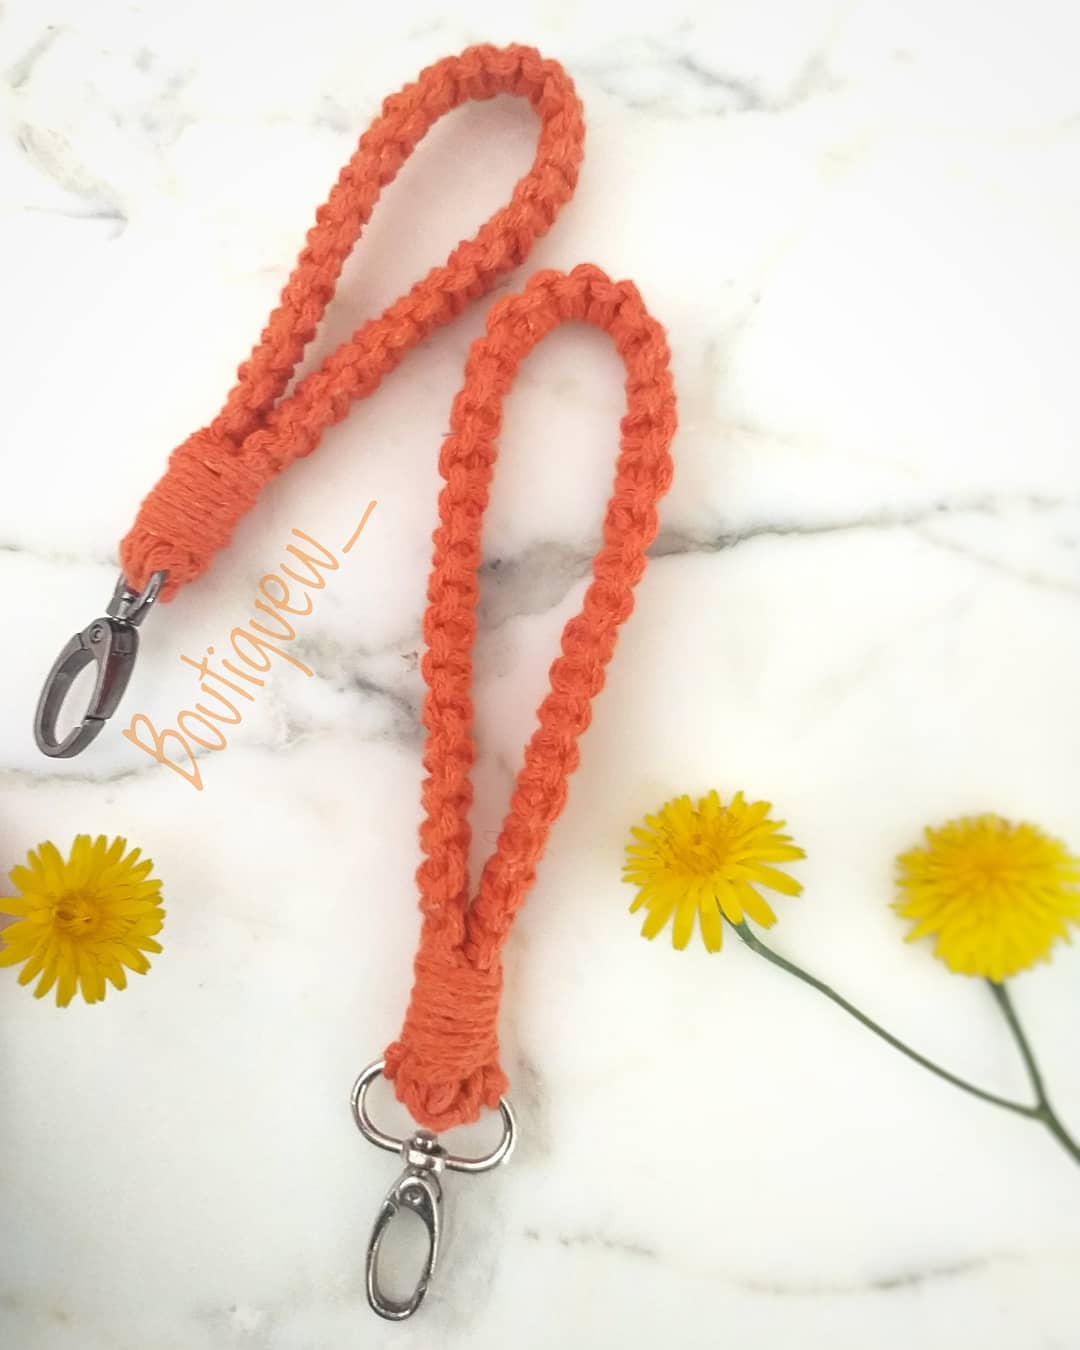 Porte clé forme de bracelet couleur orange fait main par Boutique W  حاملة المفاتيح بشكل اسوارة لون برتقالي